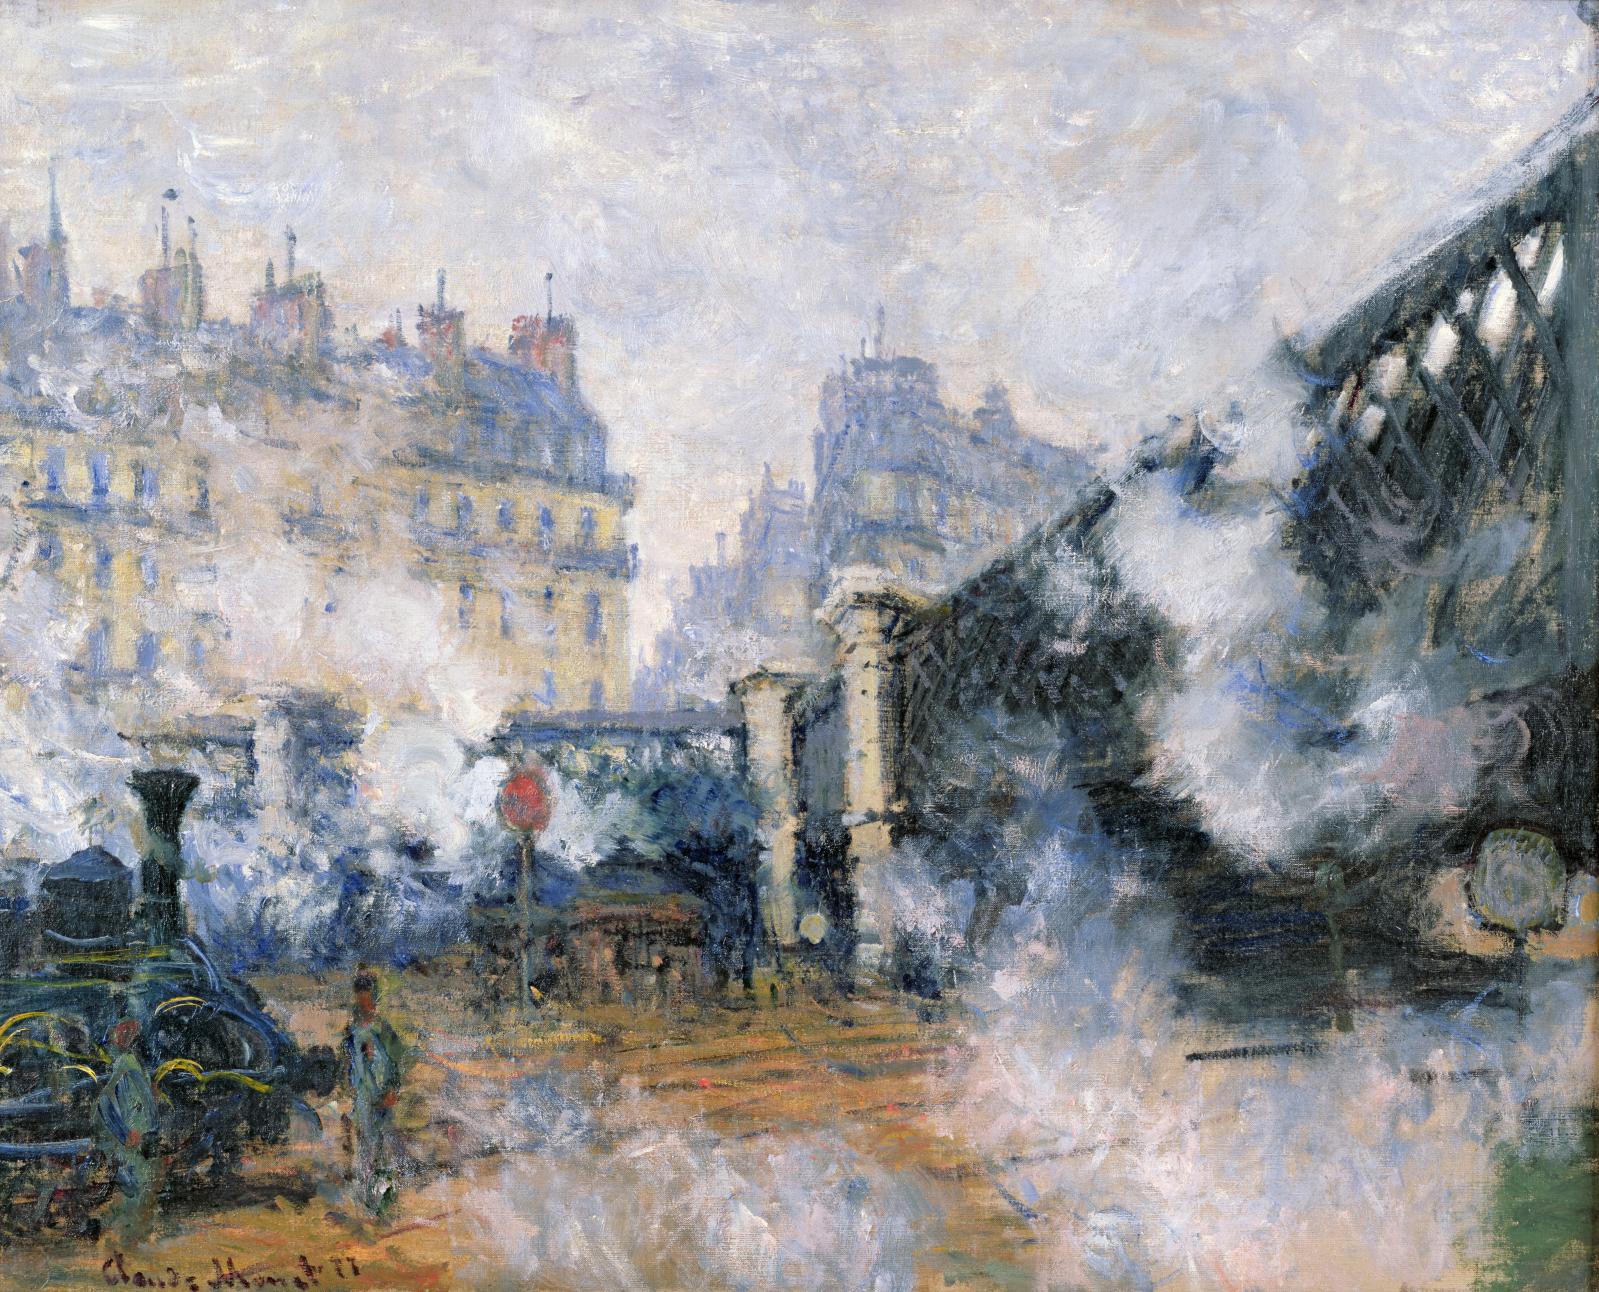 Marcel Proust's Paris at the Musée Carnavalet